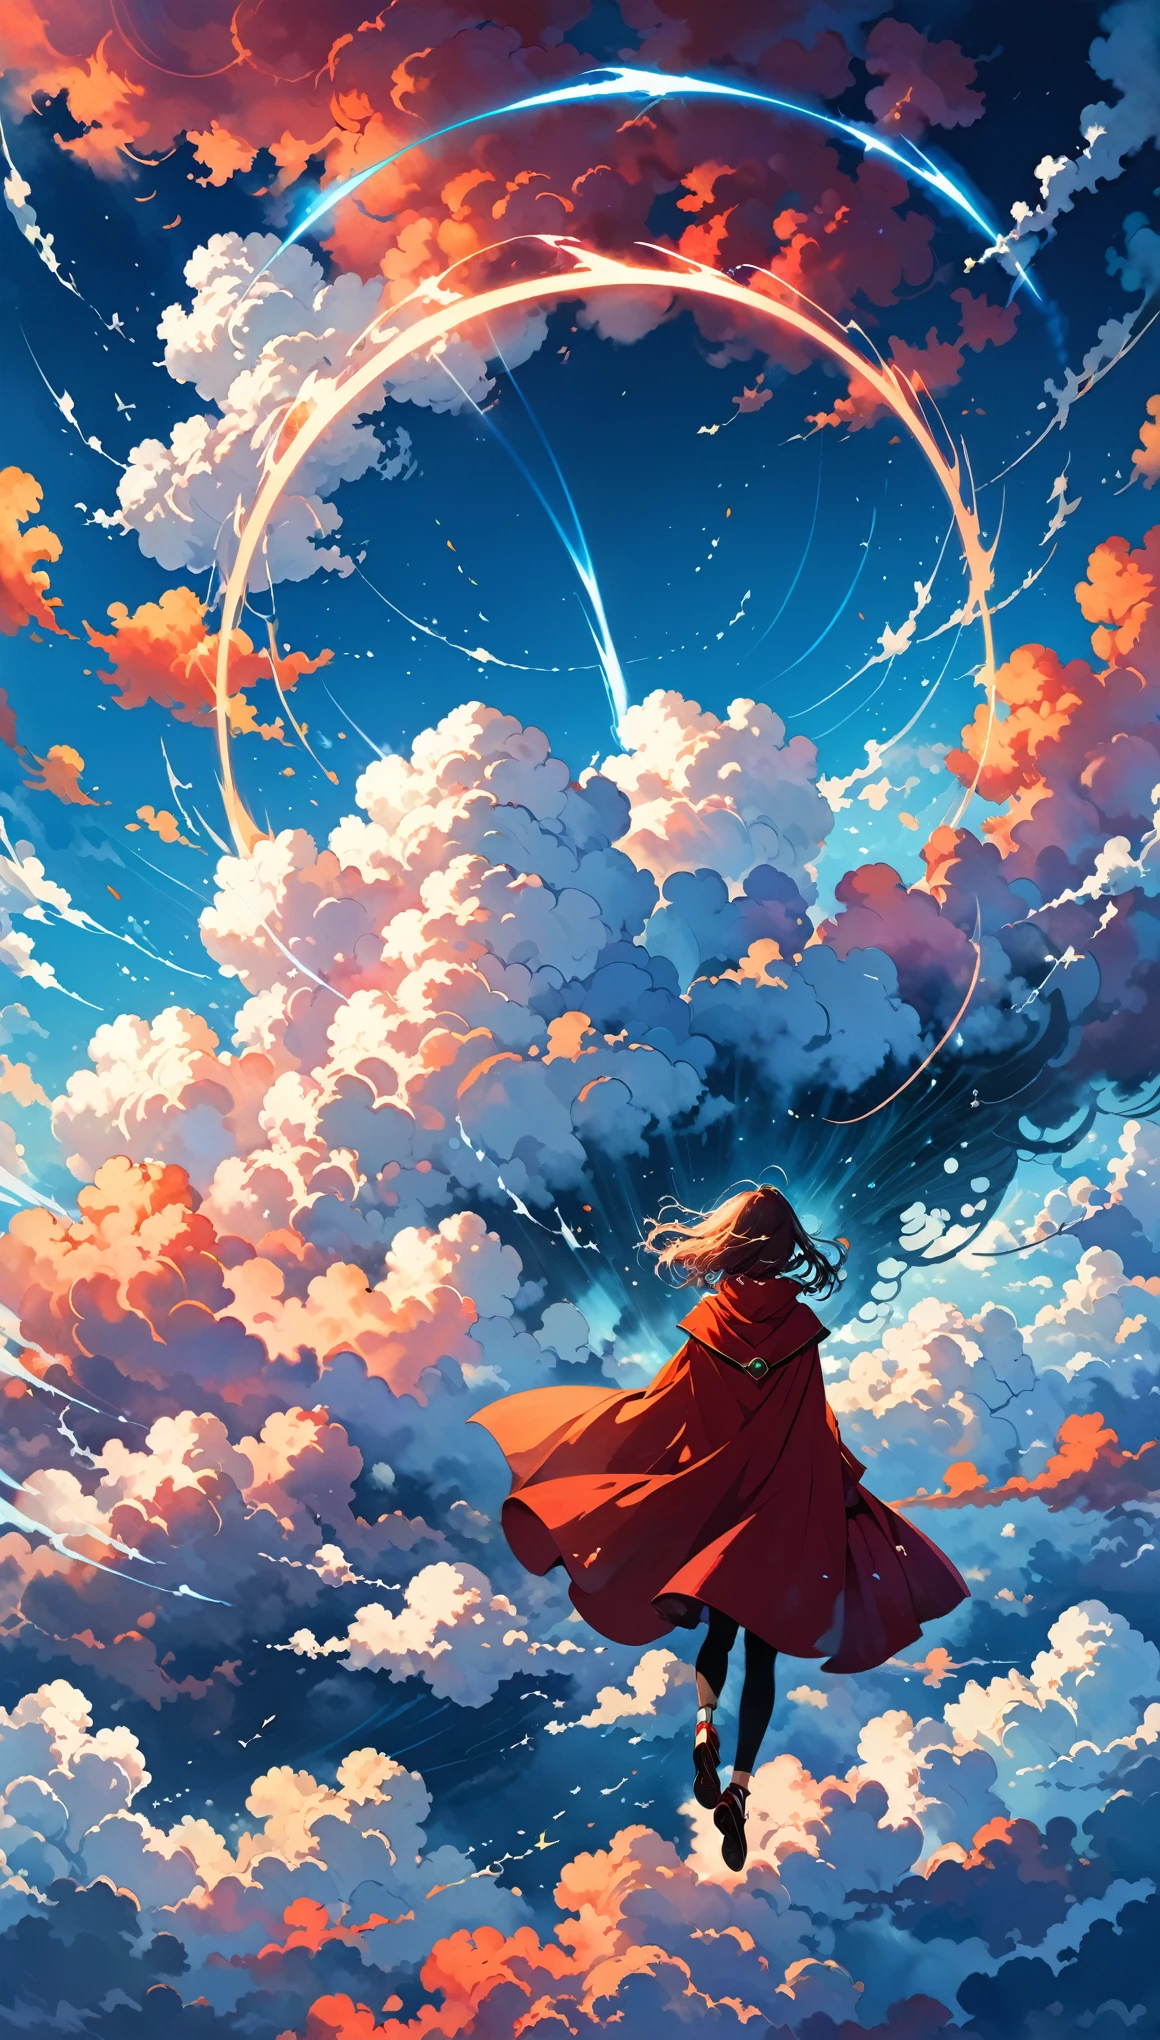 丹尼爾·梅里亞姆的風格,
七彩雲彩,一大片雲海,(激波:1.5),(衝破雲層:1.4),(環裝衝擊波雲:1.4),運動模糊,
1個女孩,(飛行動作:1.2),動態動作,红斗篷,雲環,